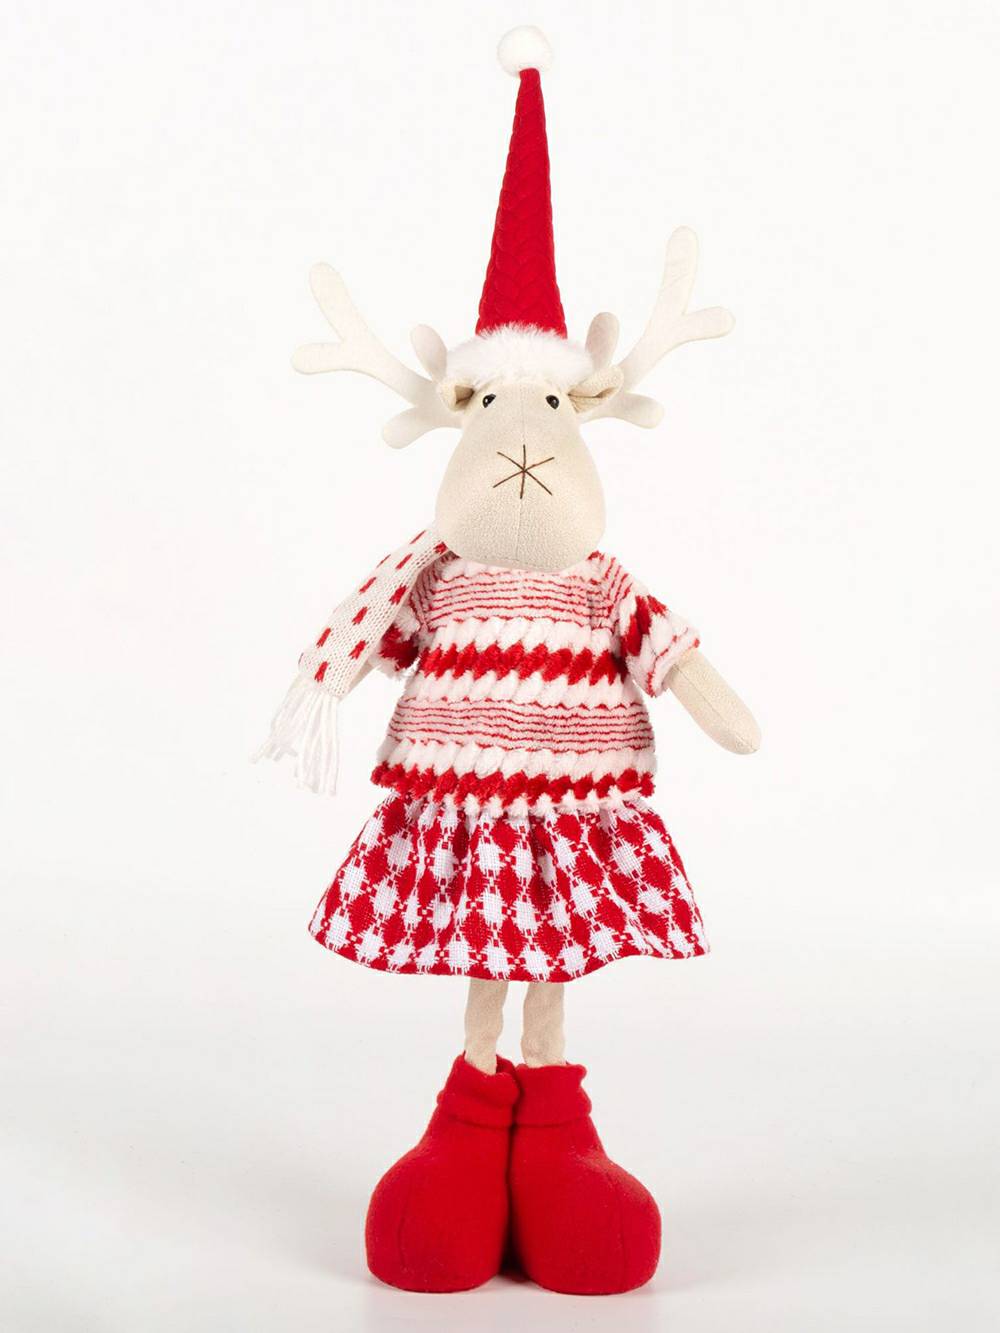 Vánoční červený plyšový elf sob a panenka Rudolfa sněhuláka